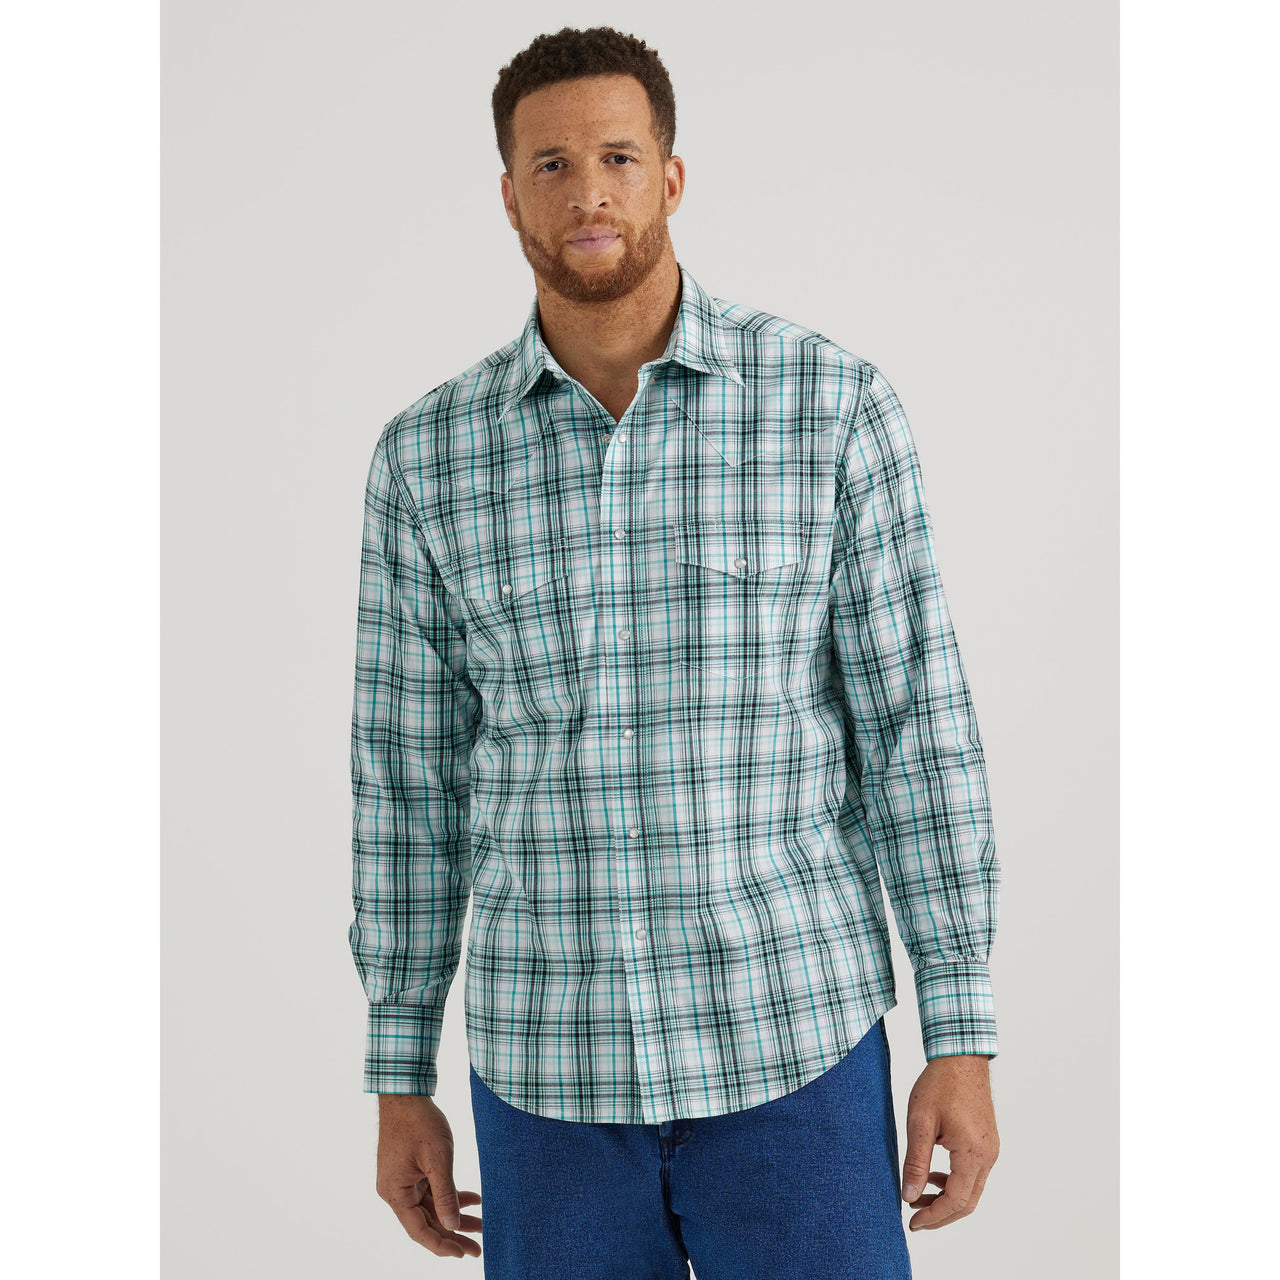 Wrangler Men's Wrinkle Resist Long Sleeve Plaid Shirt - Green